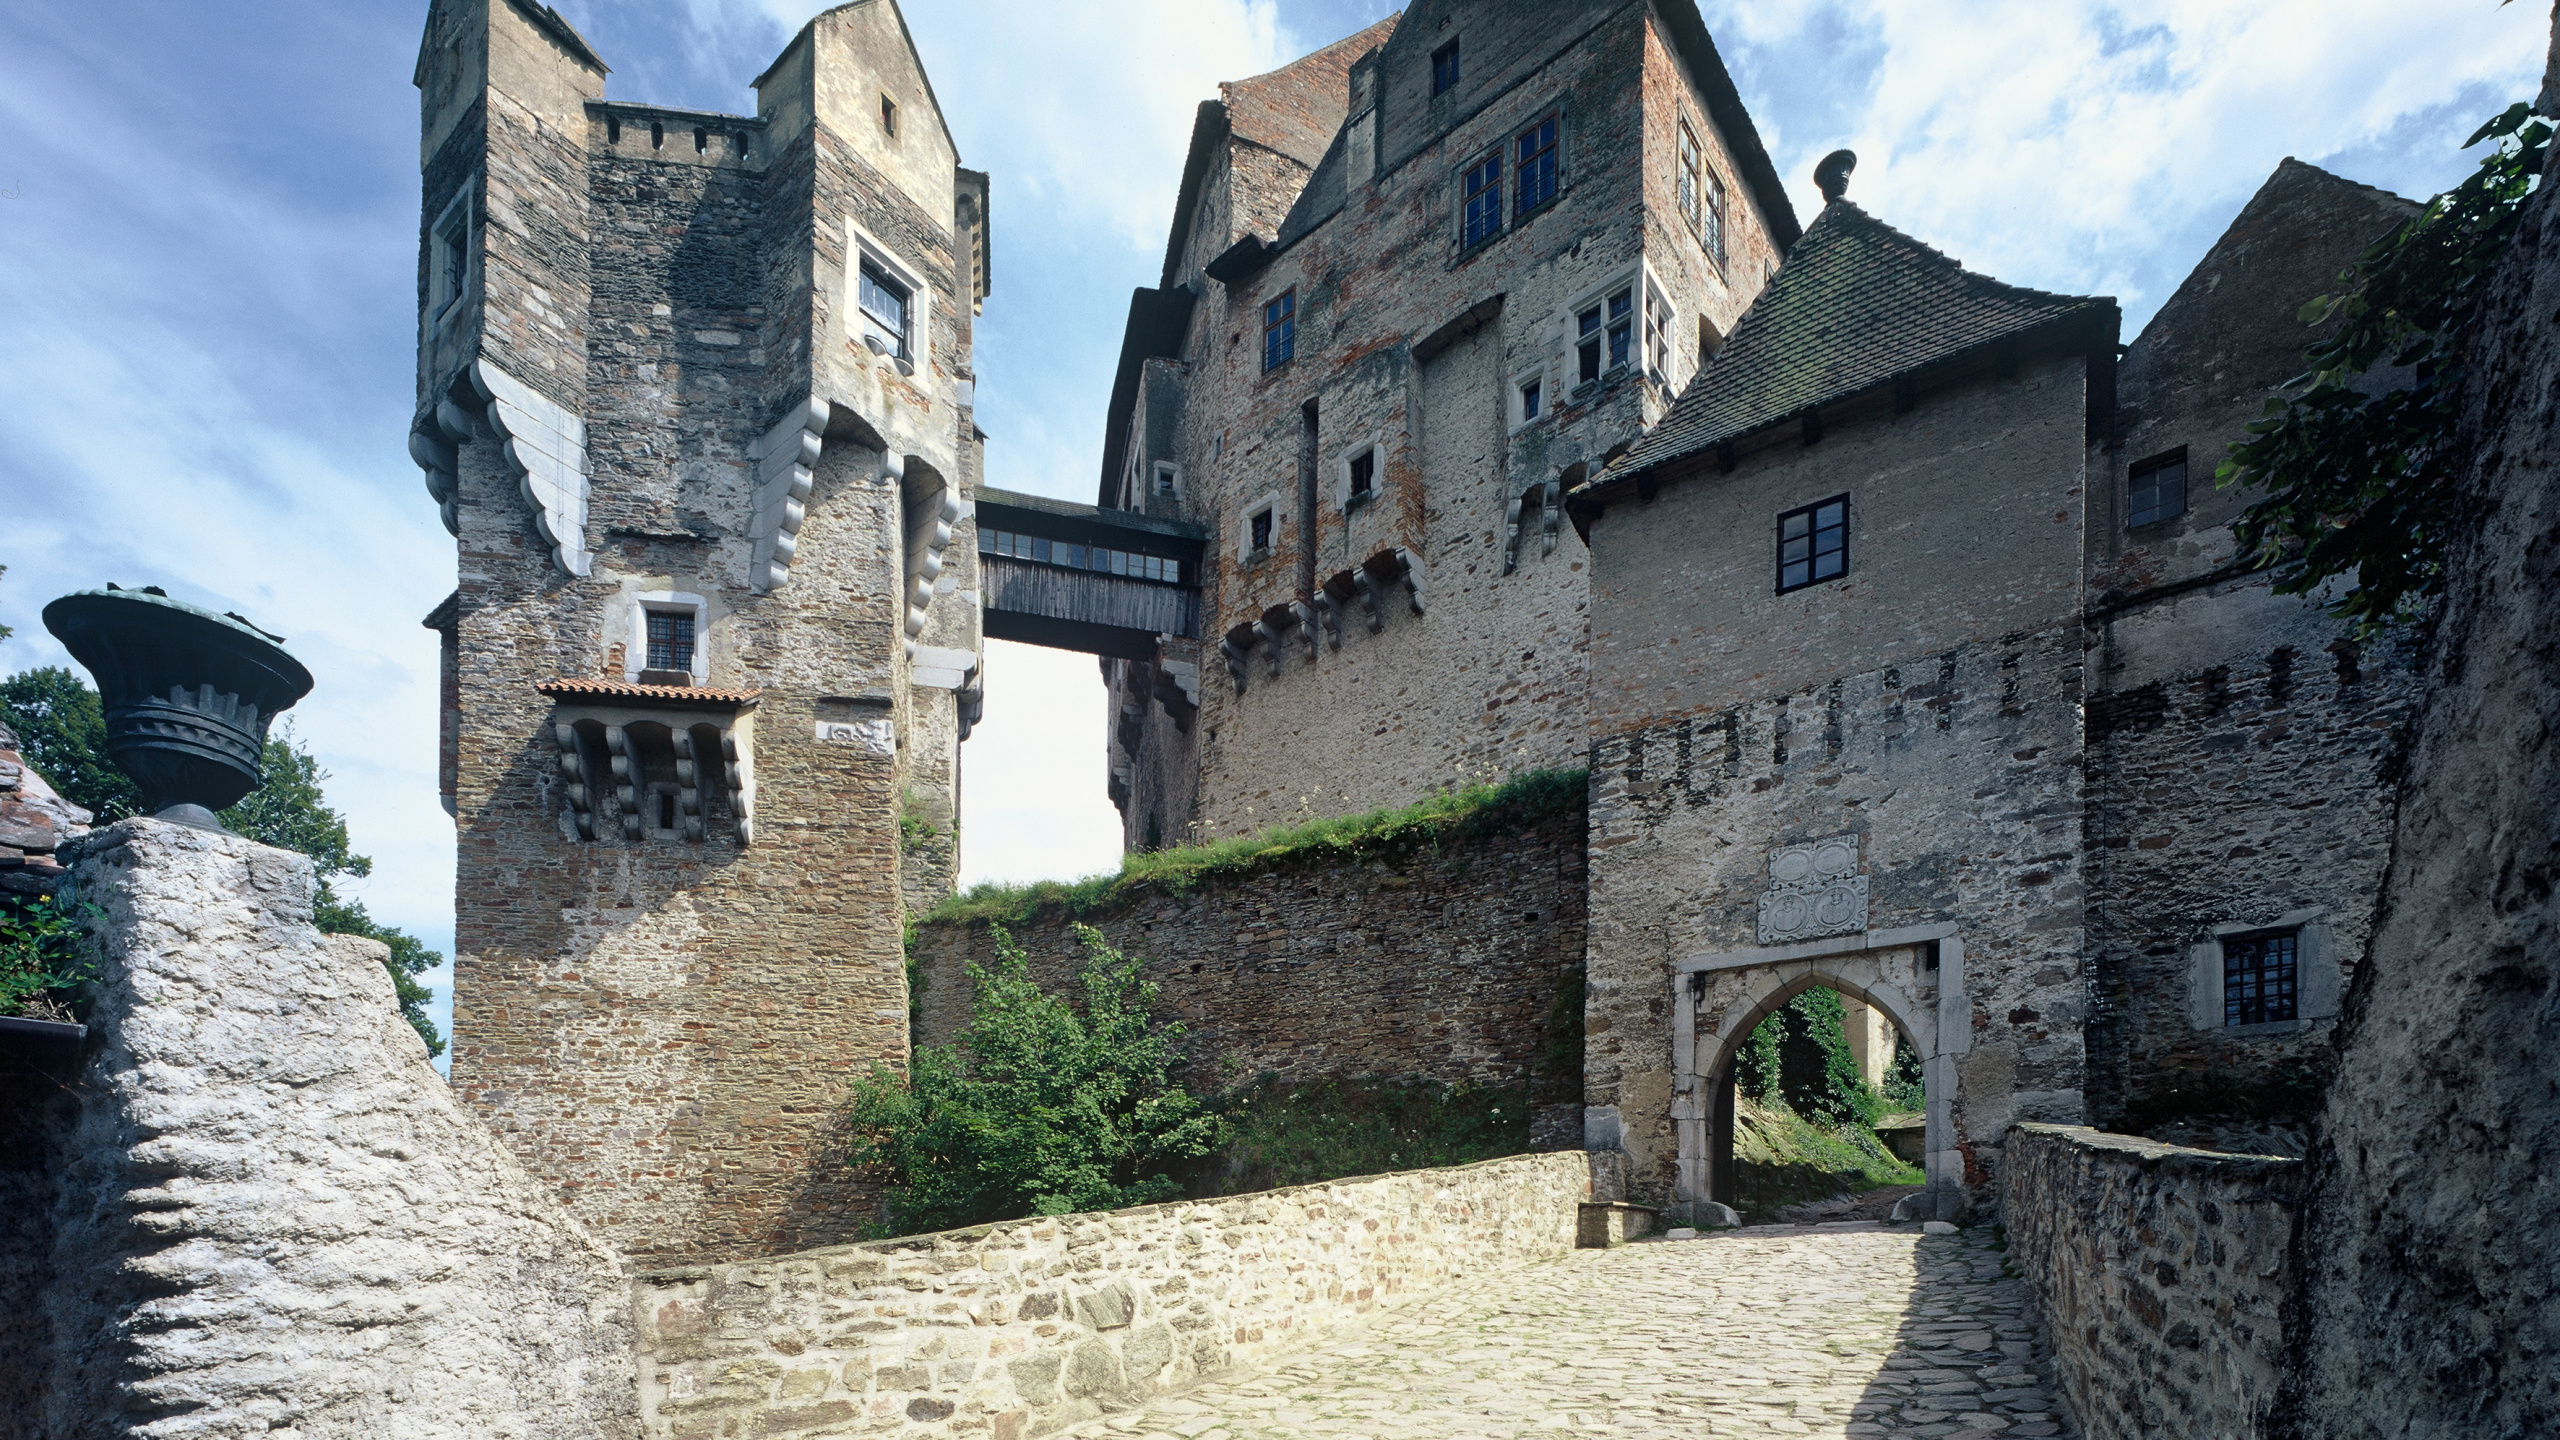 城堡, 防御工事, 中世纪建筑风格, 村庄, 旅游 壁纸 2560x1440 允许